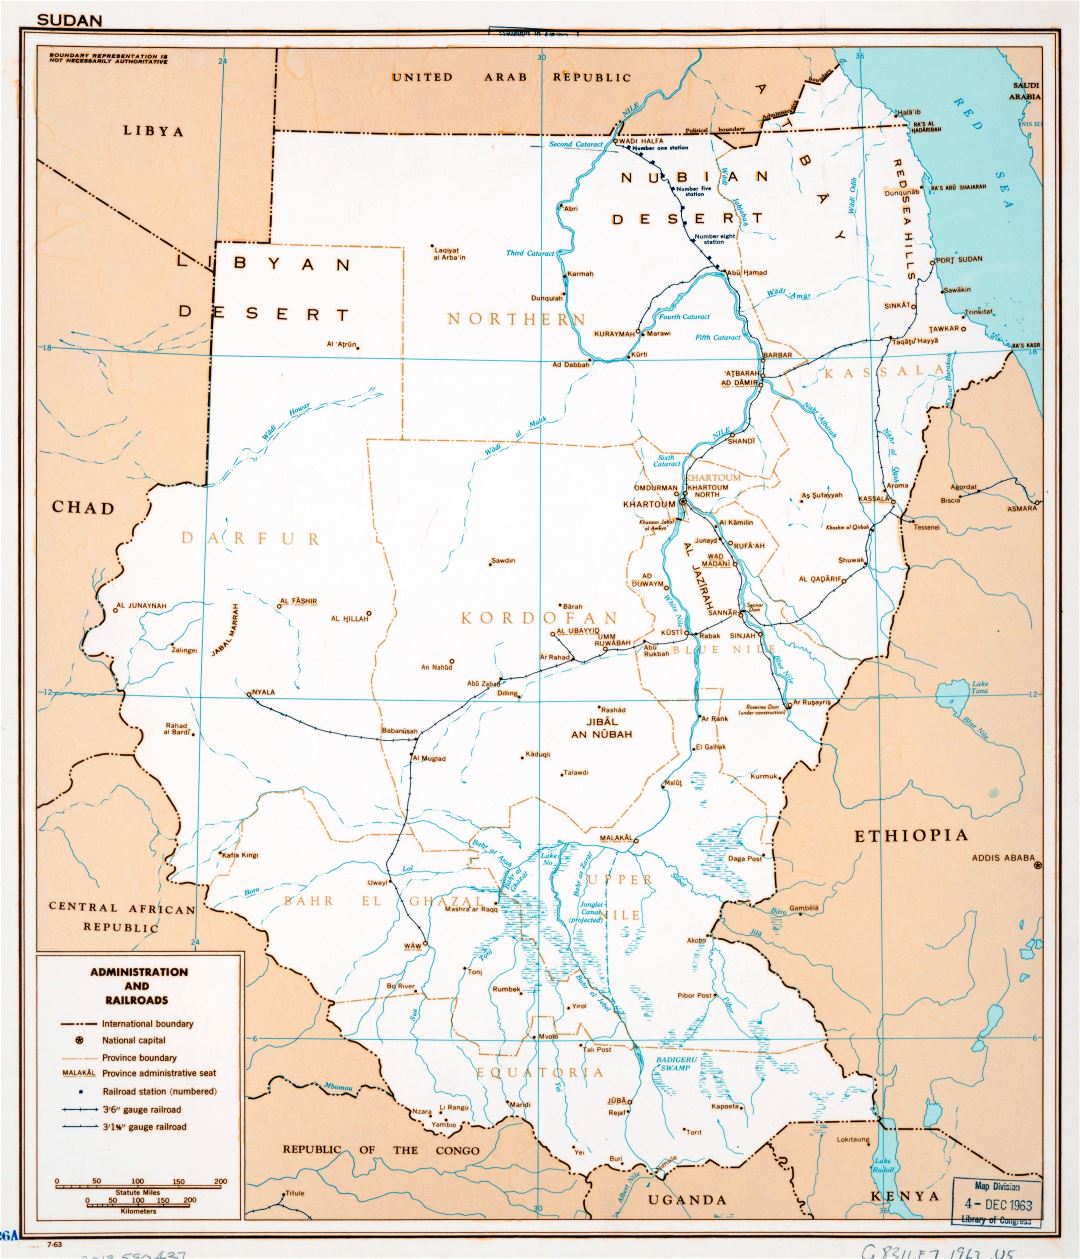 Крупномасштабная административная и железнодорожная карта Судана - 1963